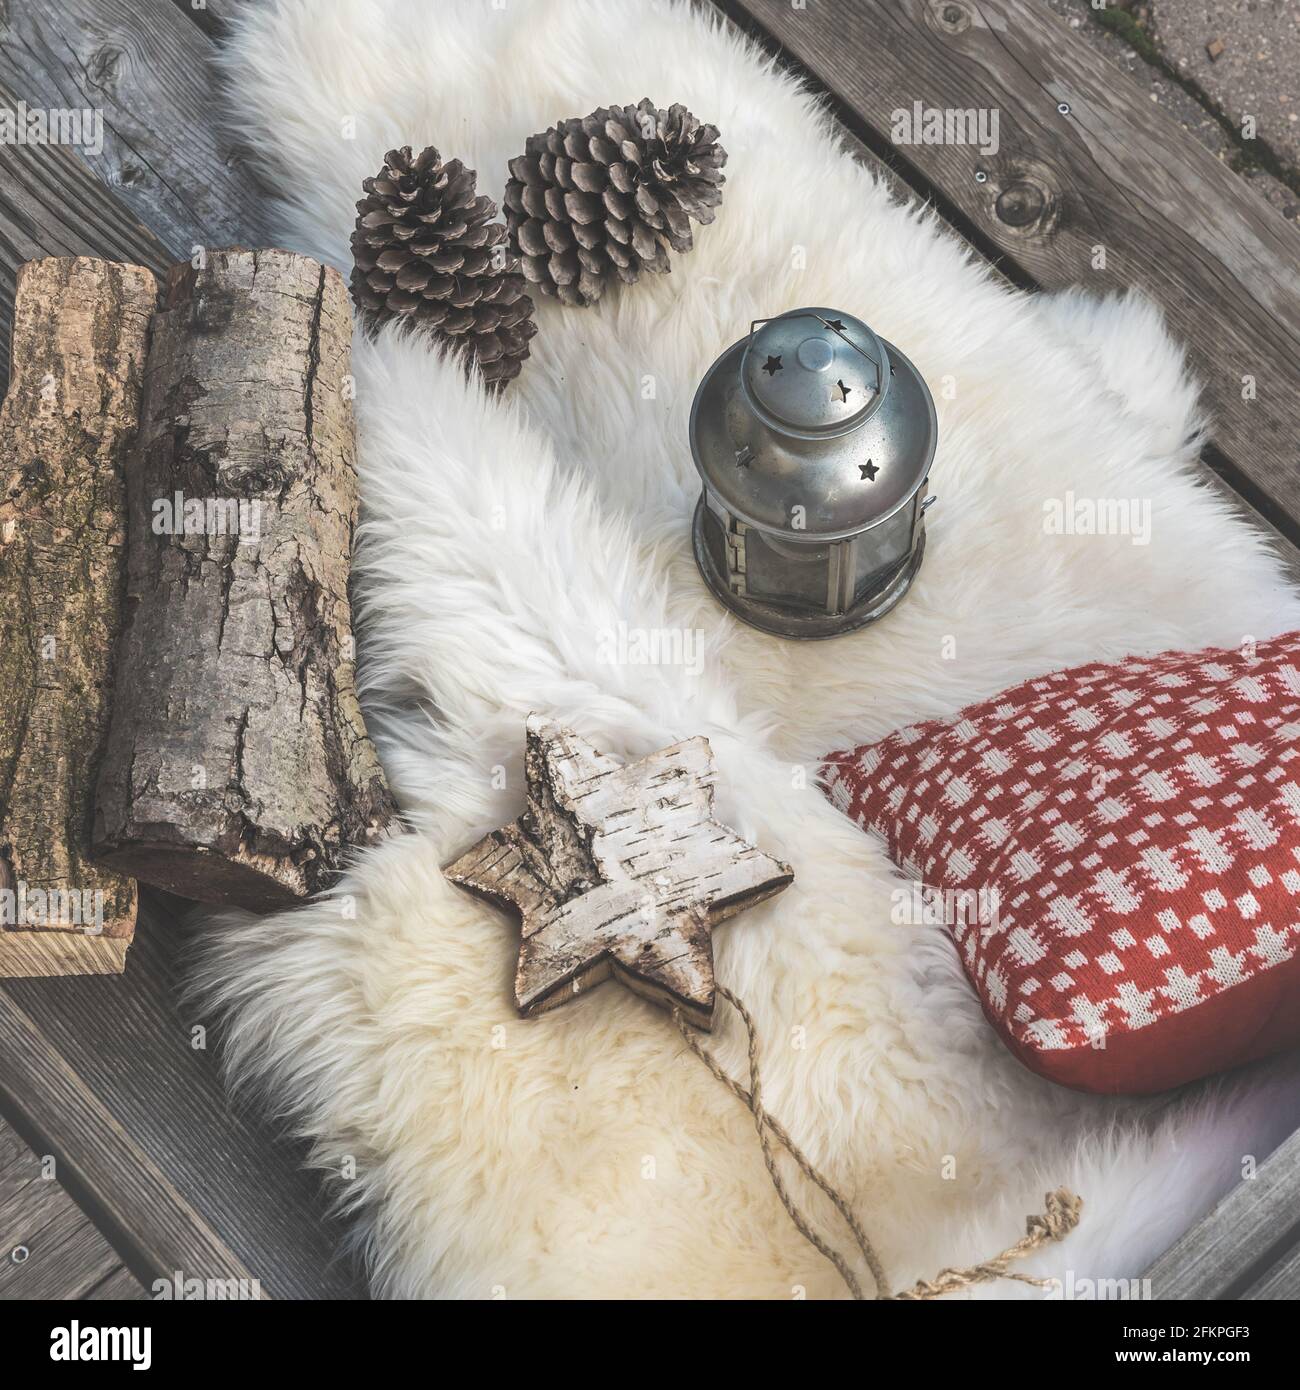 Veranda in legno con pelle di agnello, cuscini natalizi rossi e bianchi, lanterna e tronchi, vista dall'alto obliqua Foto Stock